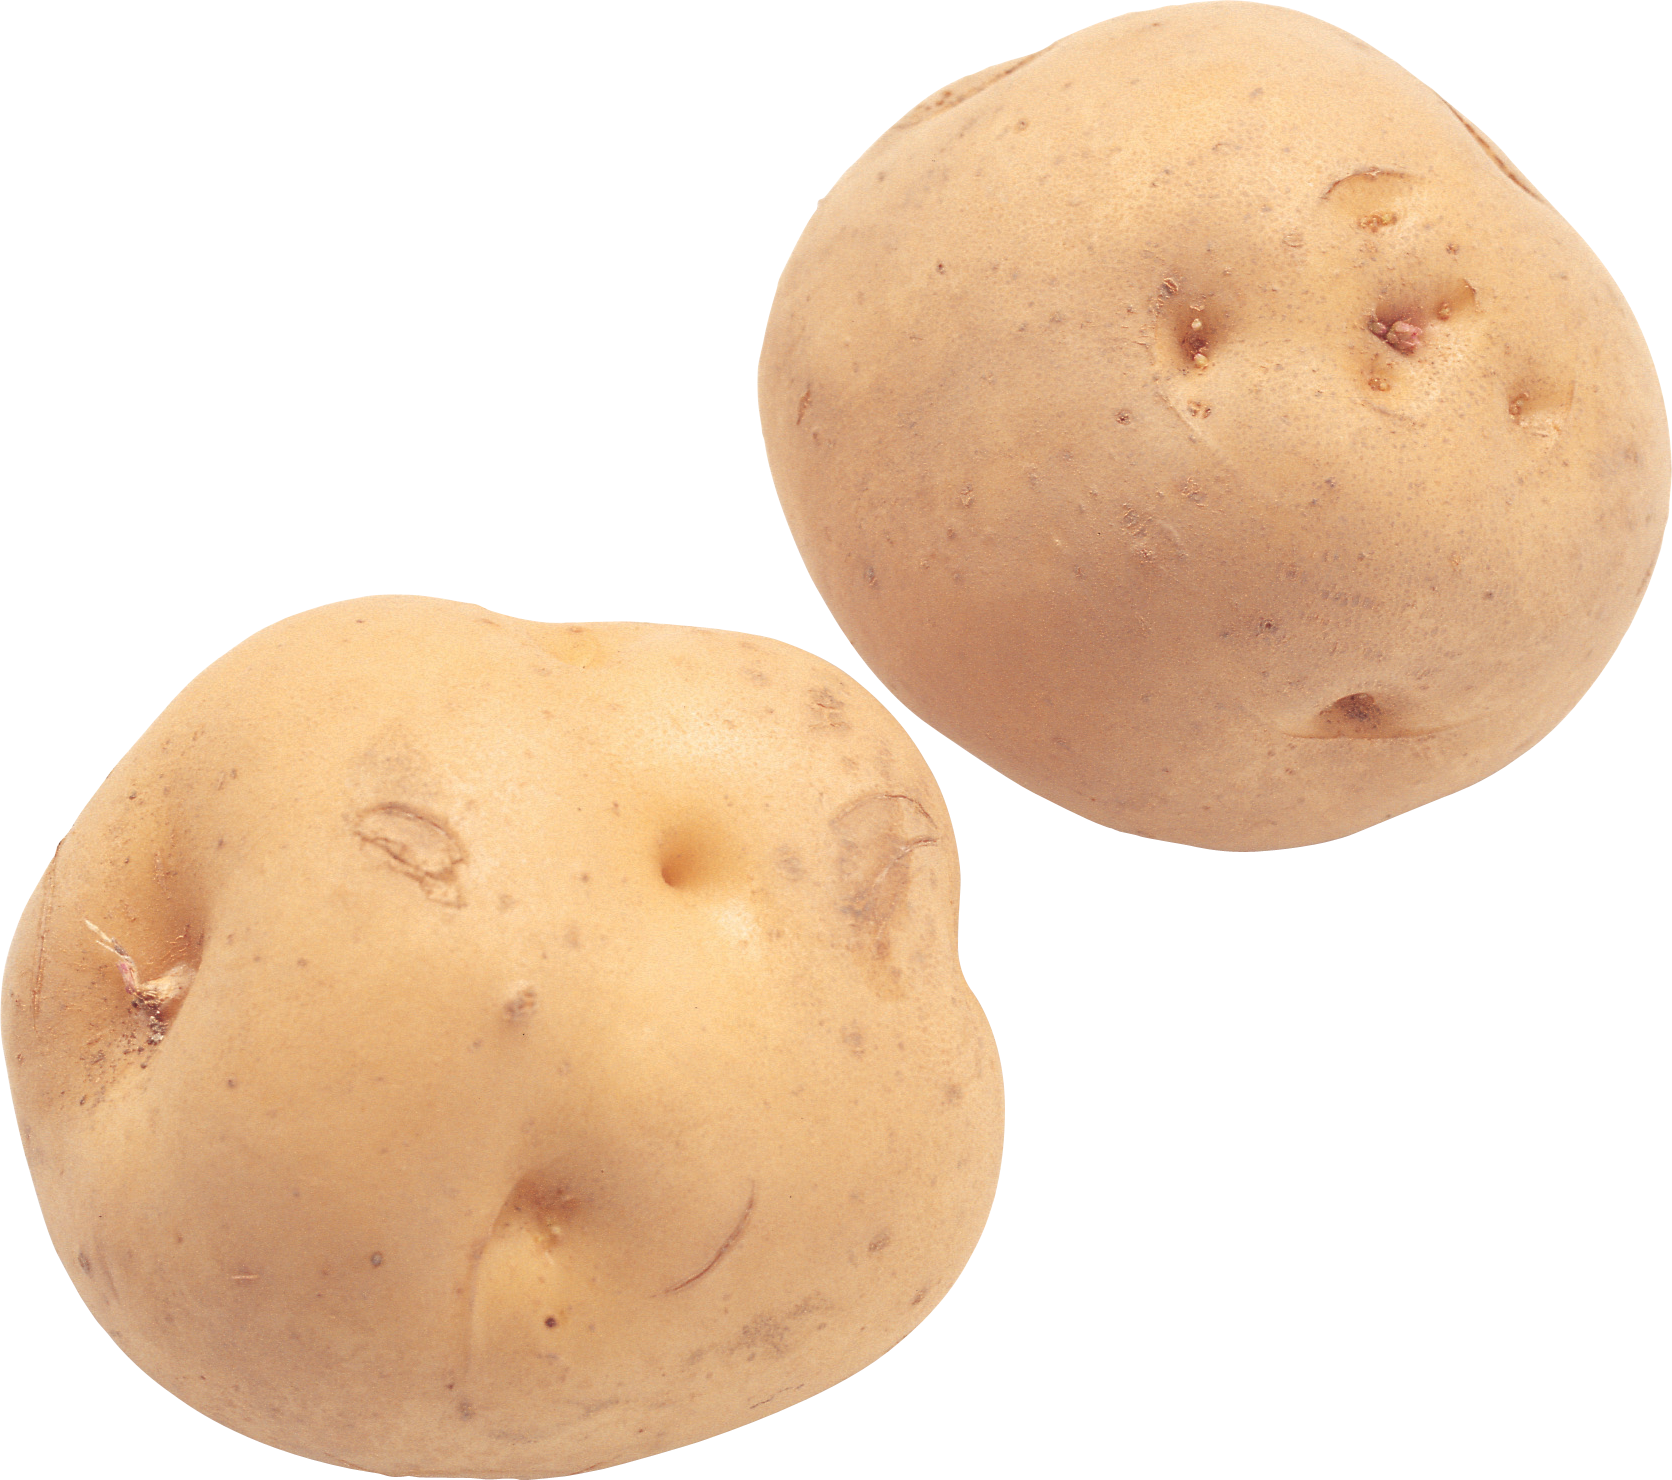 2 batatas